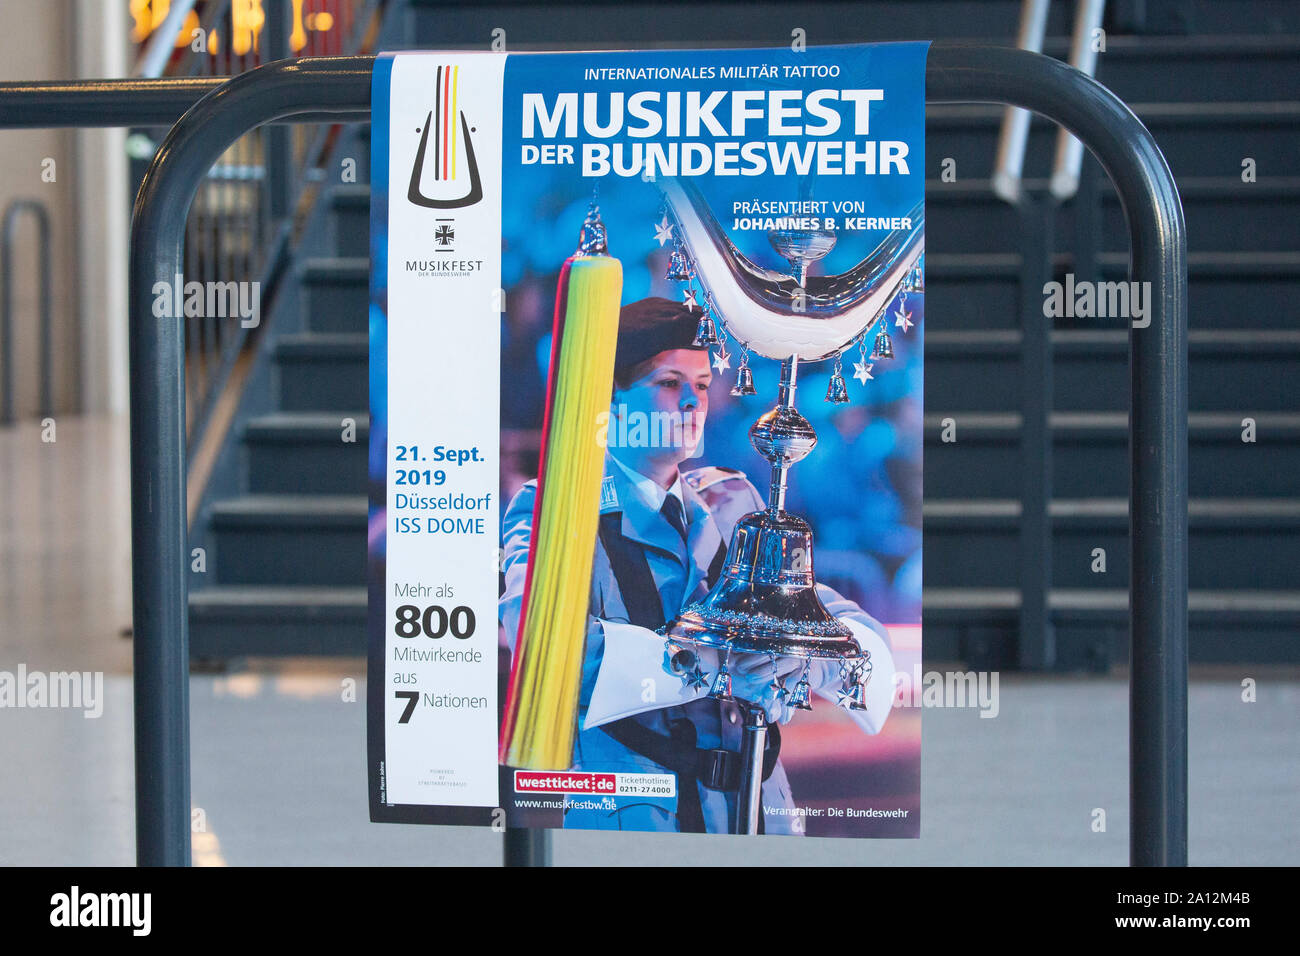 Plakat Musikfest der Bundeswehr, Internationales Militär Tattoo im ISS Dome. Düsseldorf, 21.09.2019 Stock Photo